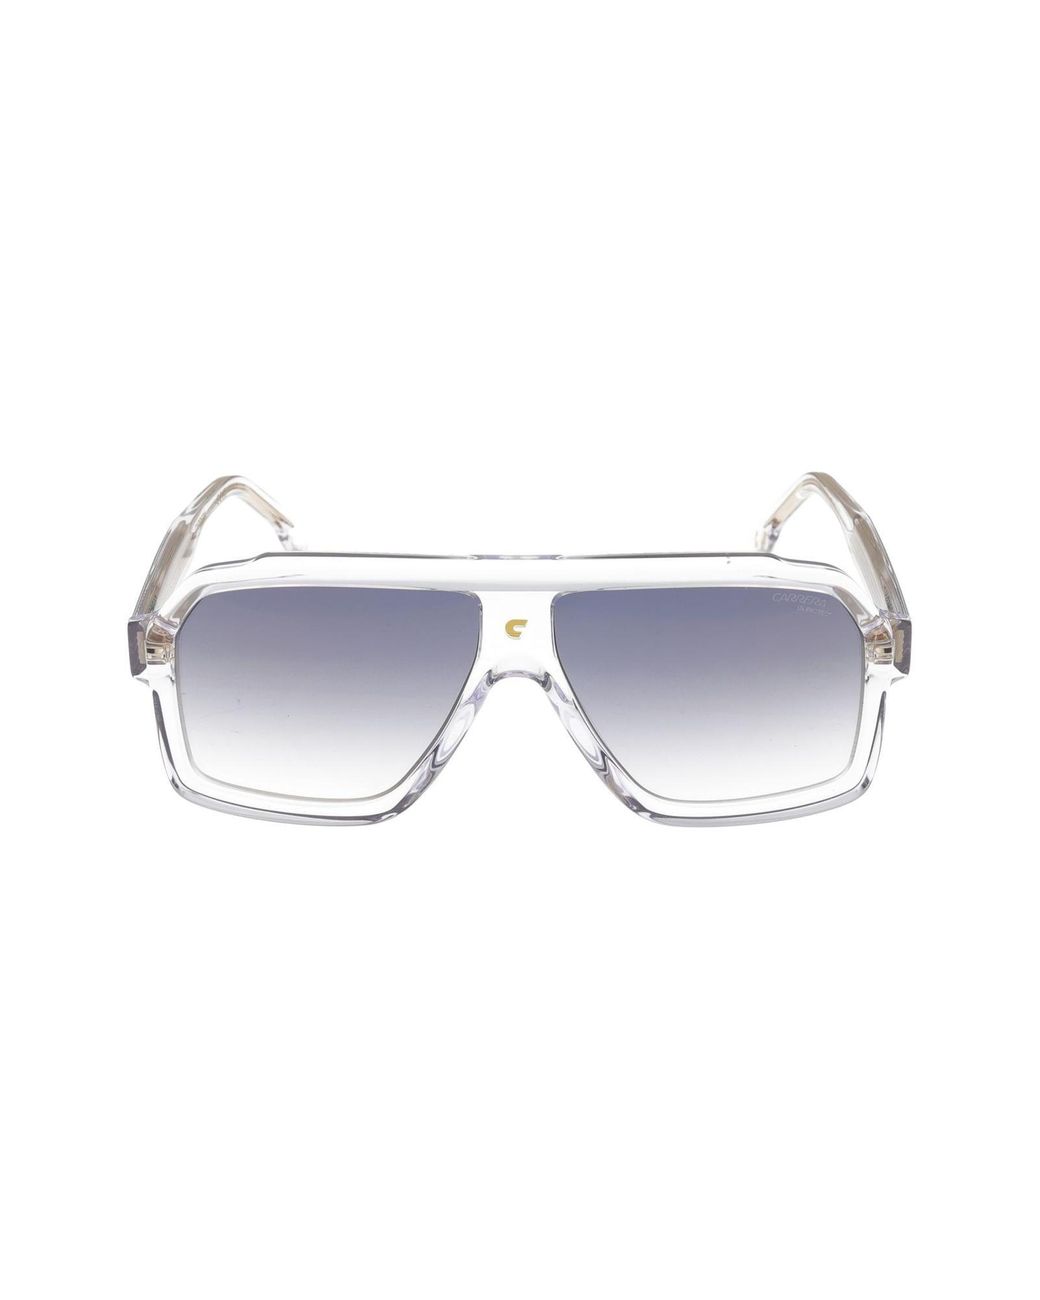 Salvatore Ferragamo Blue Browline Men's Sunglasses SF966S 003 57  886895435666 - Sunglasses - Jomashop